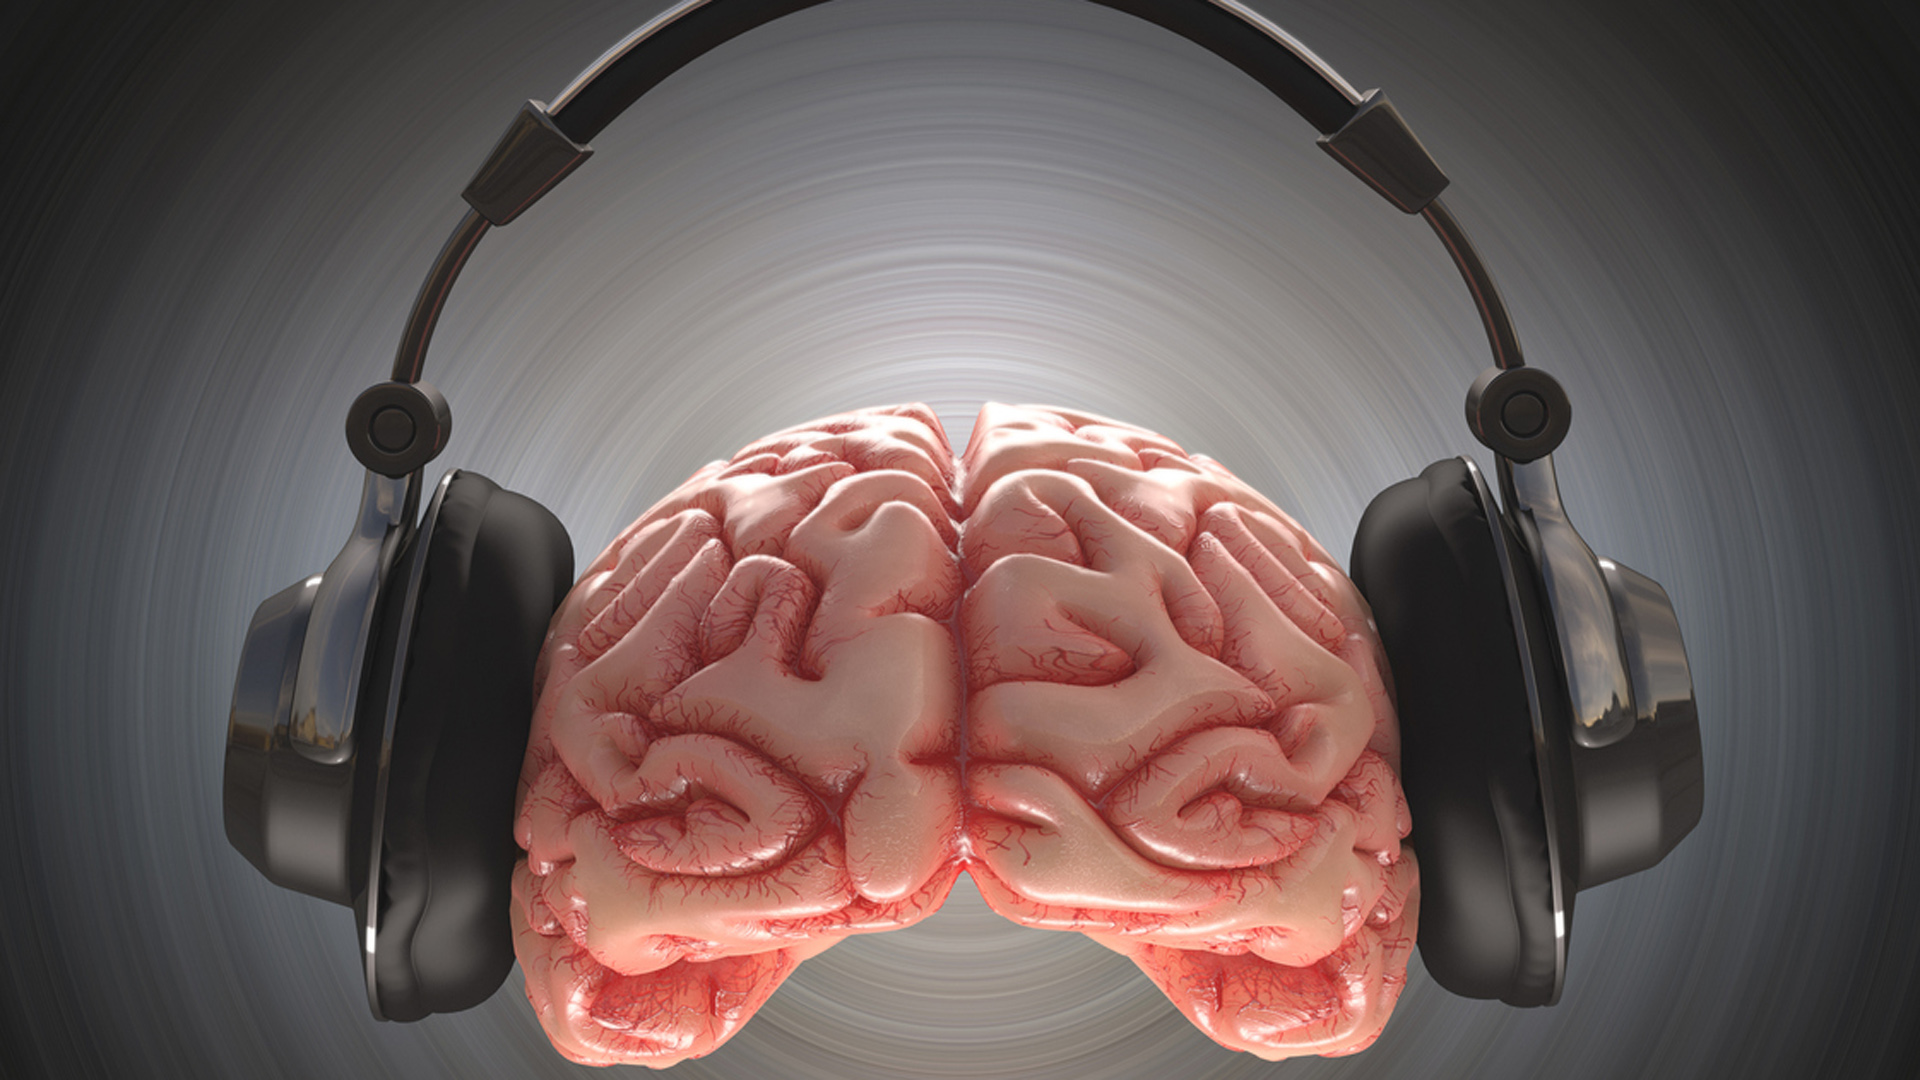 La música puede convertirse en una herramienta terapéutica y estimulante para algunas regiones cerebrales lesionadas (Getty)